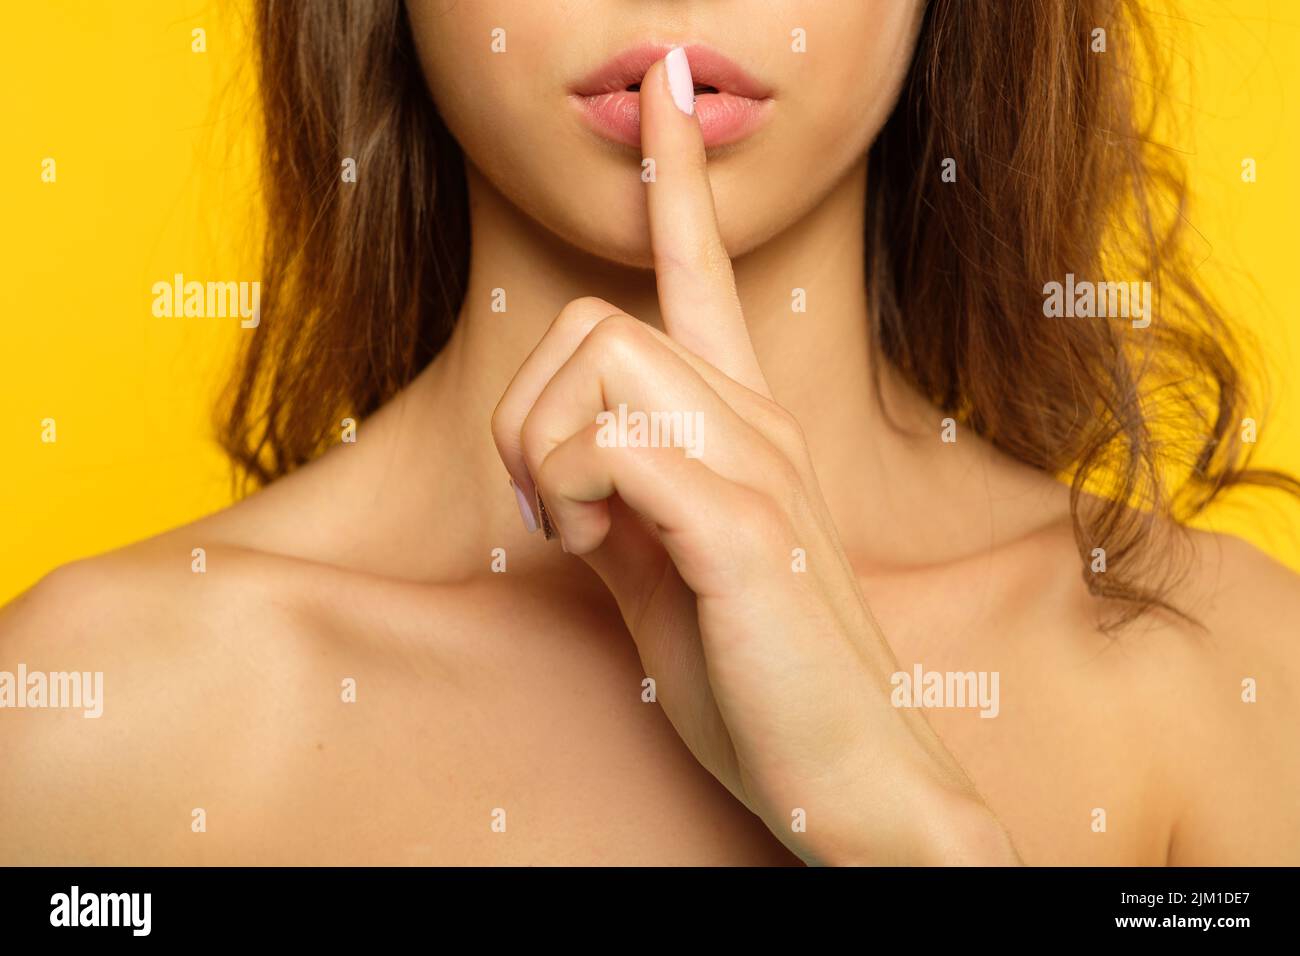 girl keep secret mystery finger on lips Stock Photo